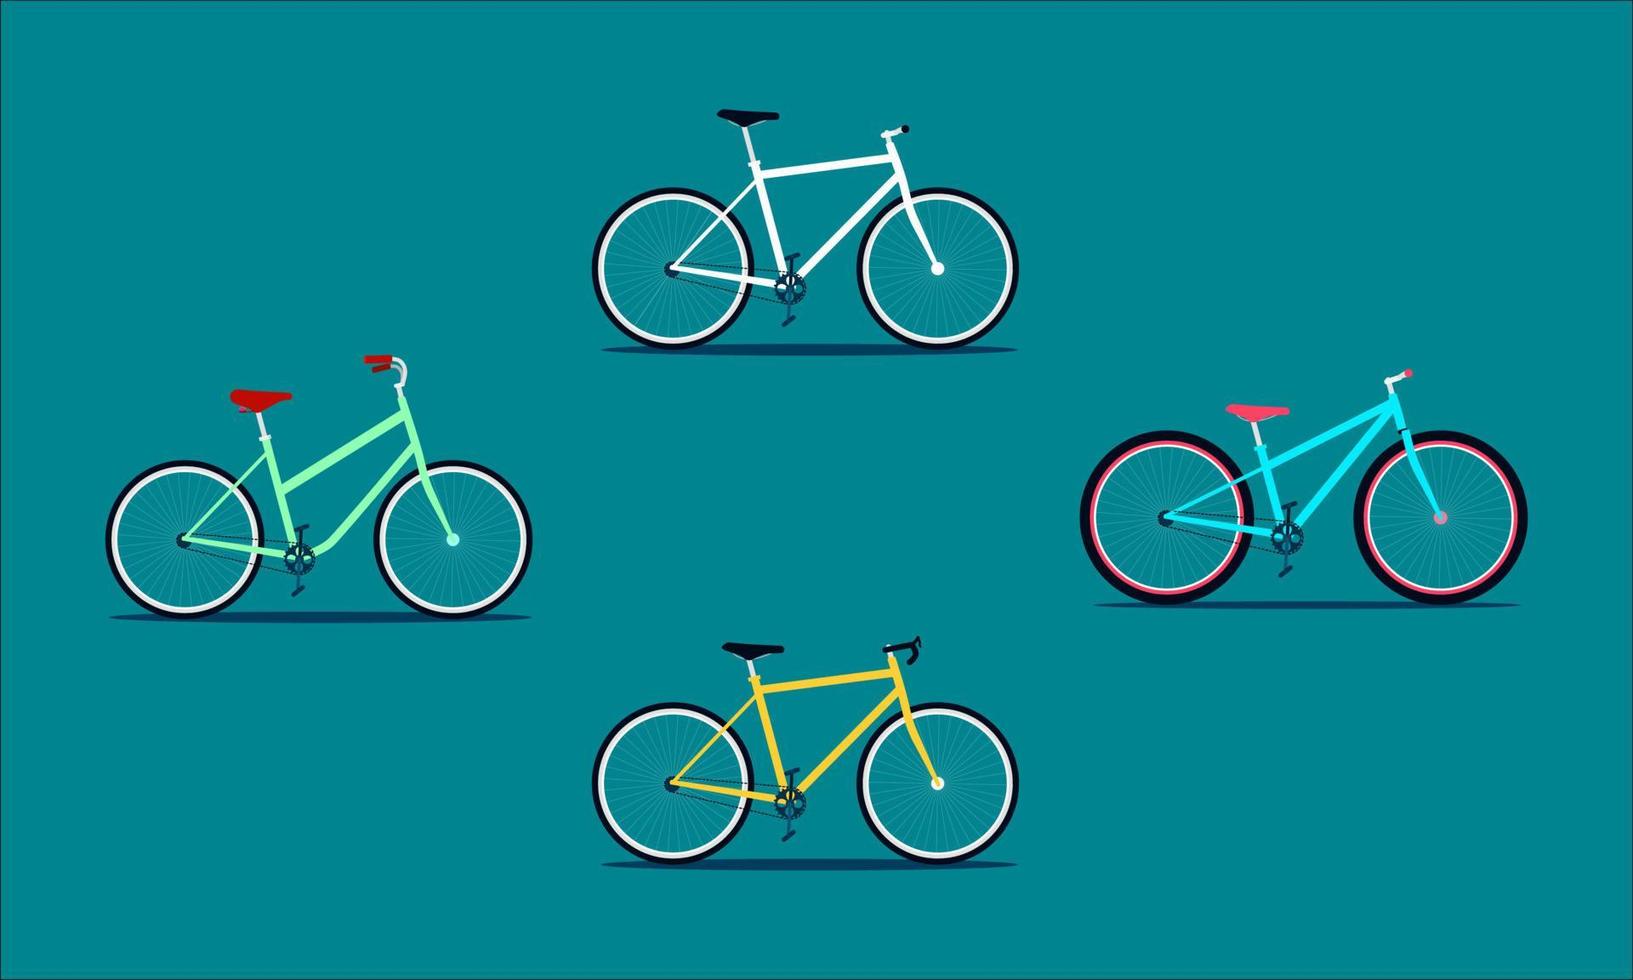 a bicicleta de quatro marchas fixas. estilo moderno liso colorido. ilustração vetorial eps10 vetor